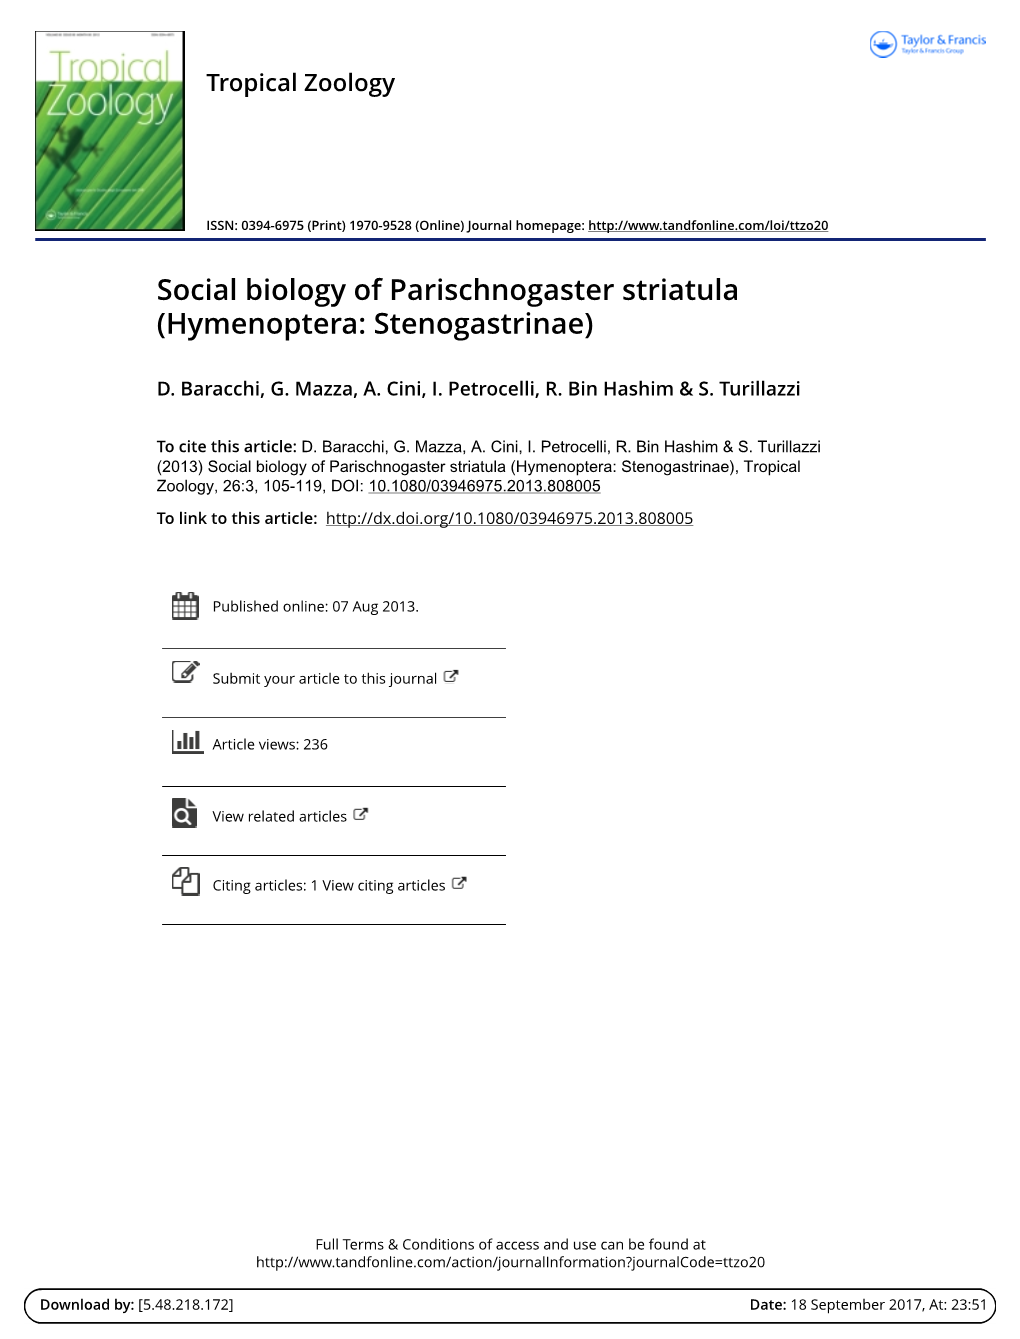 Social Biology of Parischnogaster Striatula (Hymenoptera: Stenogastrinae)